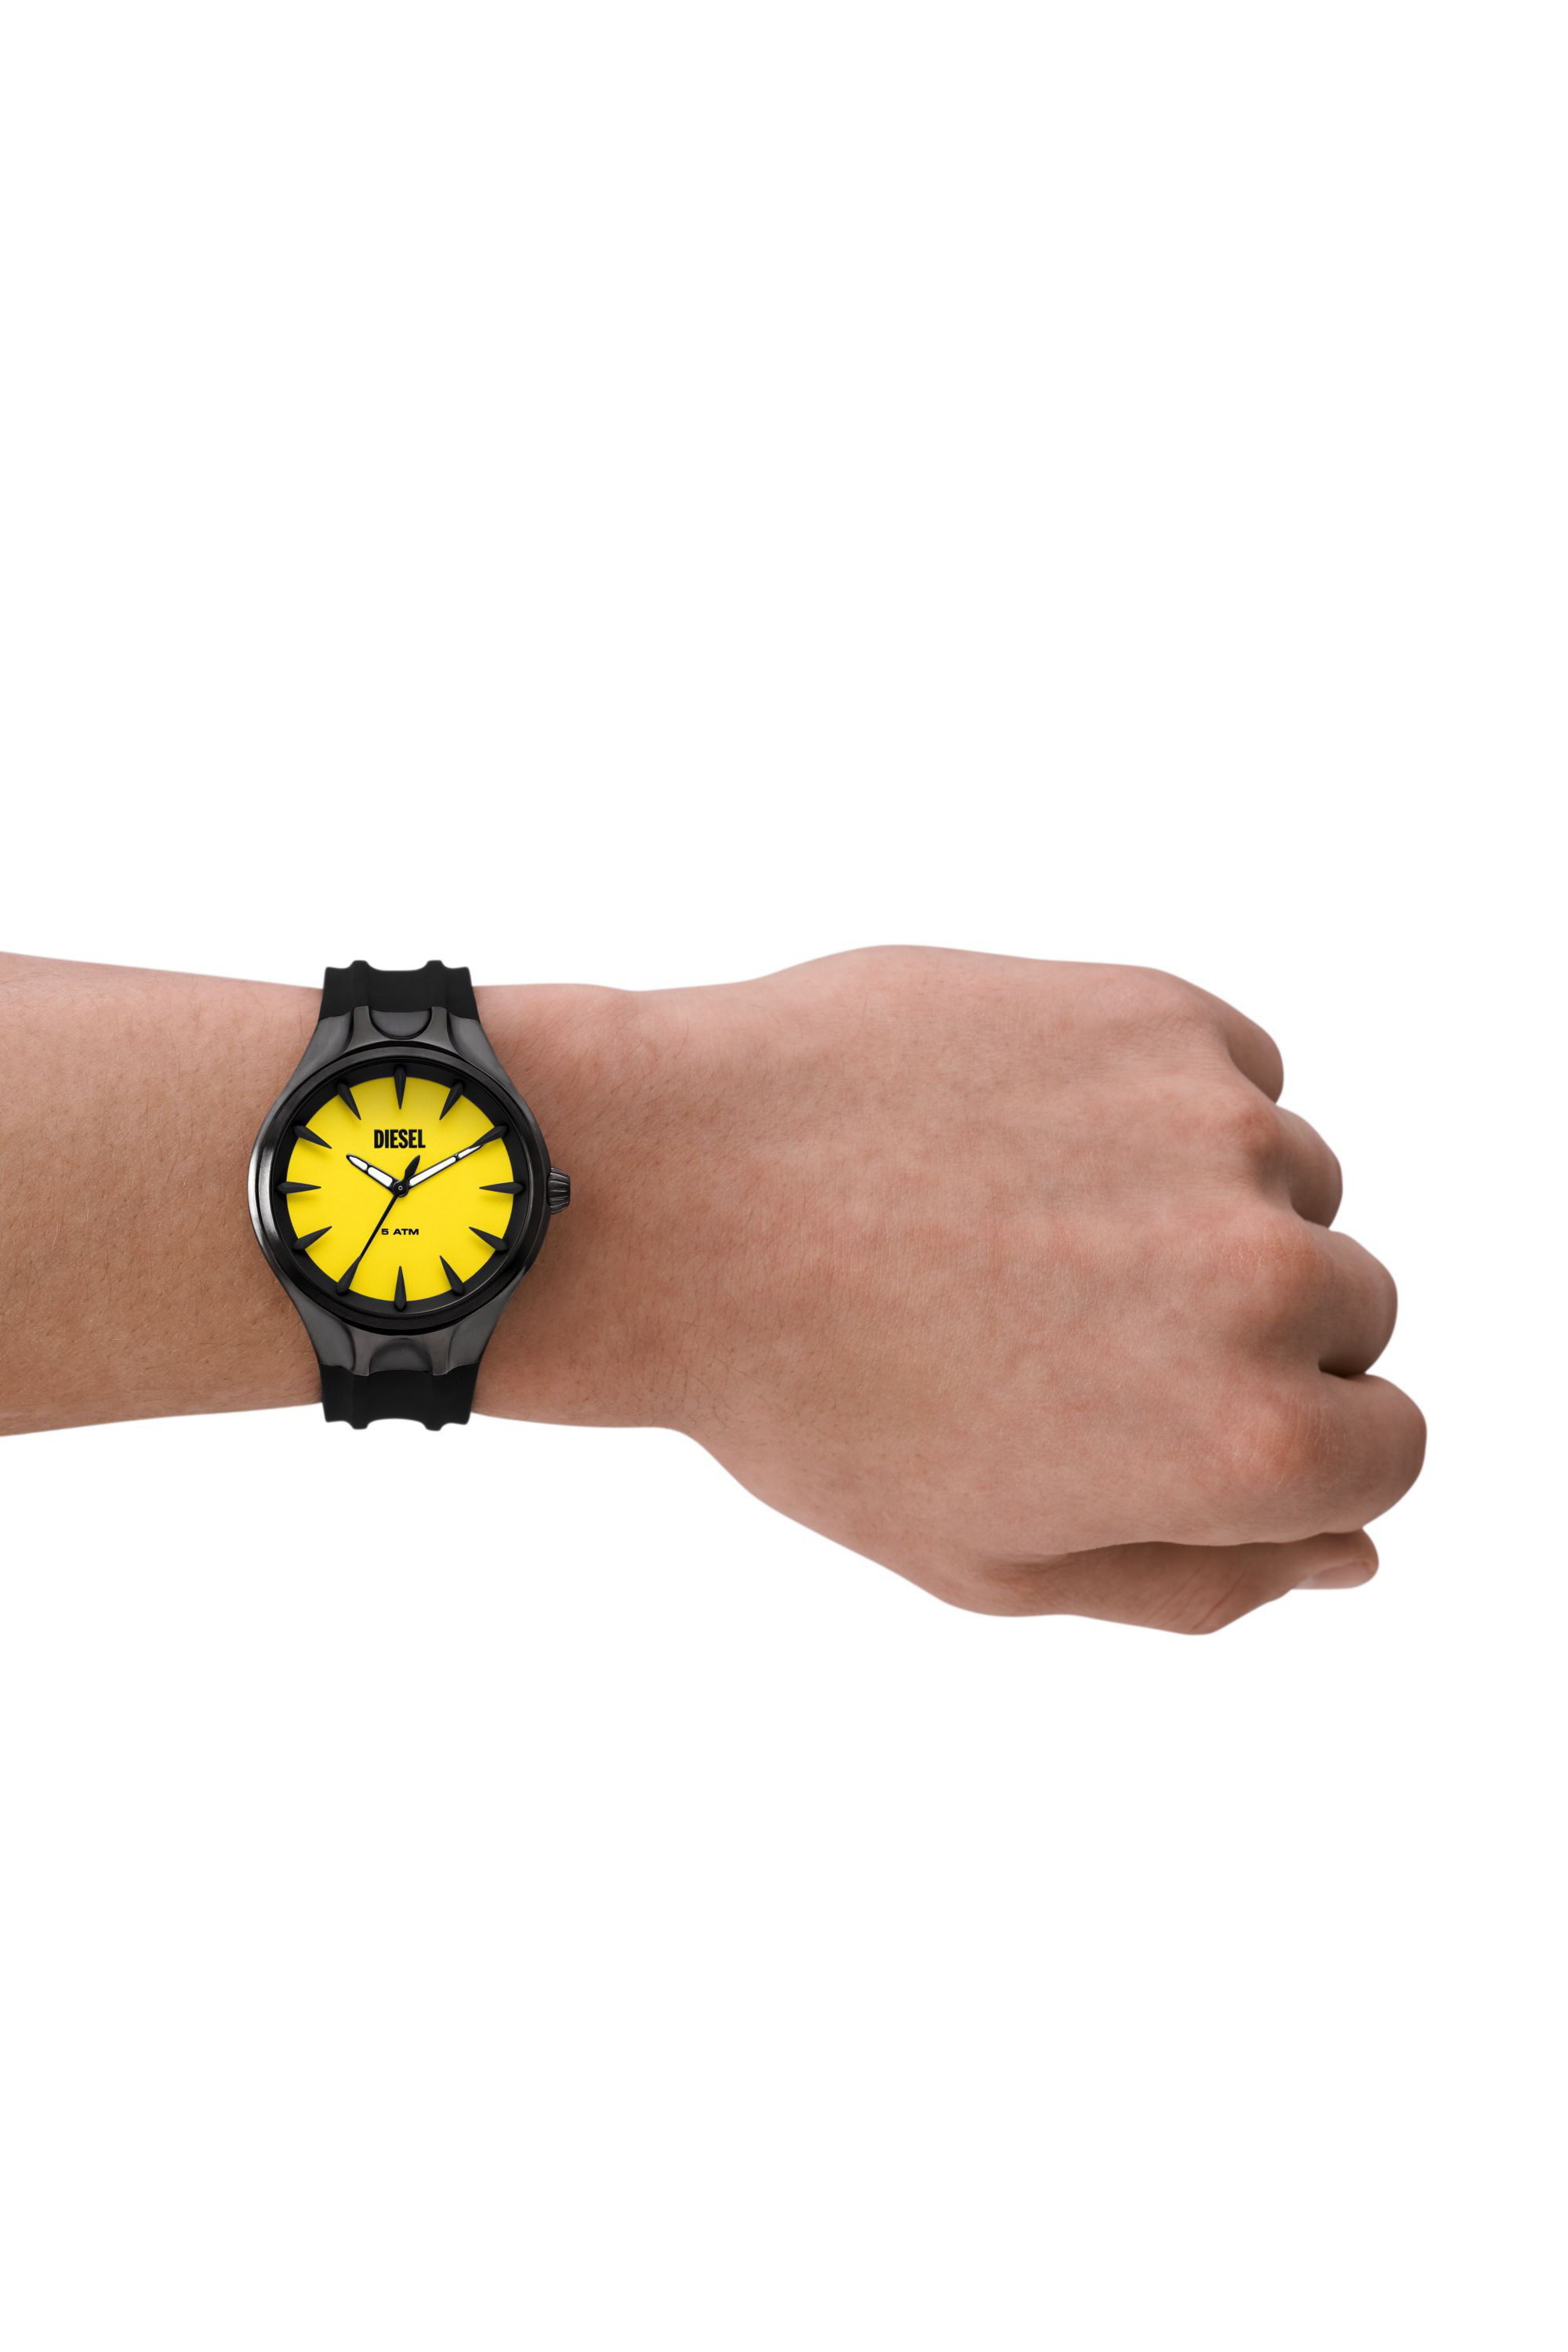 Diesel - DZ2201, Man Streamline three-hand black silicone watch in Black - Image 4